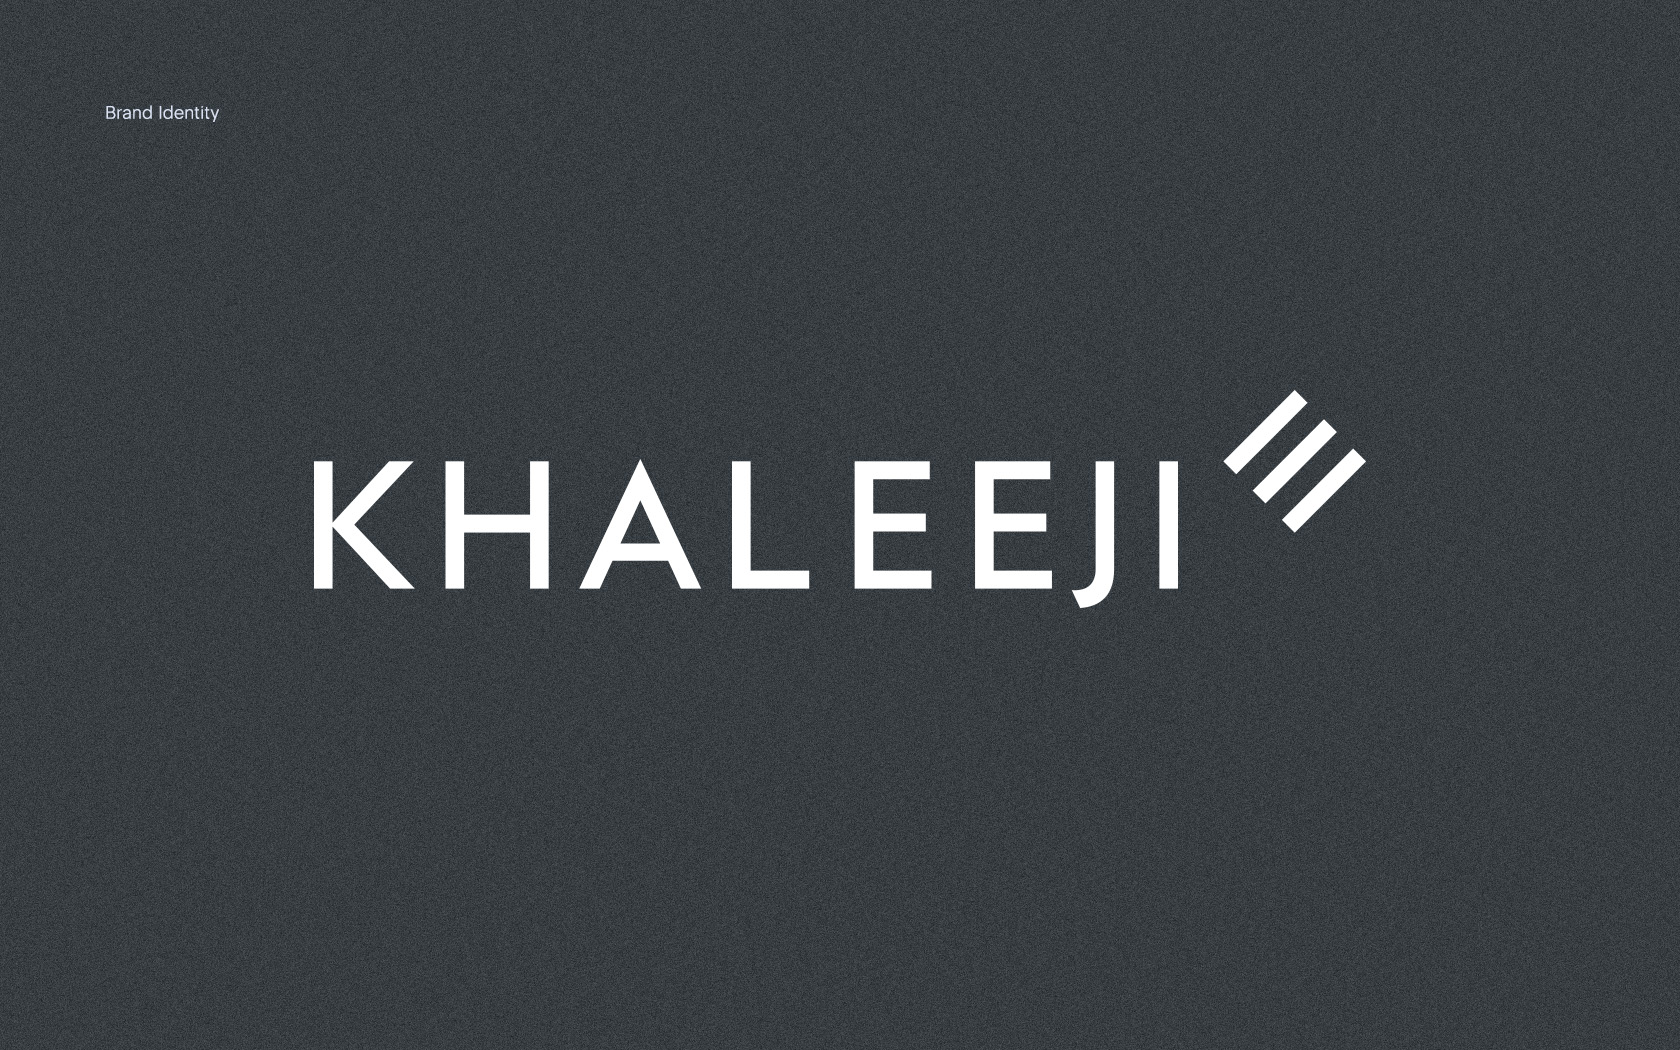 Khaleeji. Brand logo in white